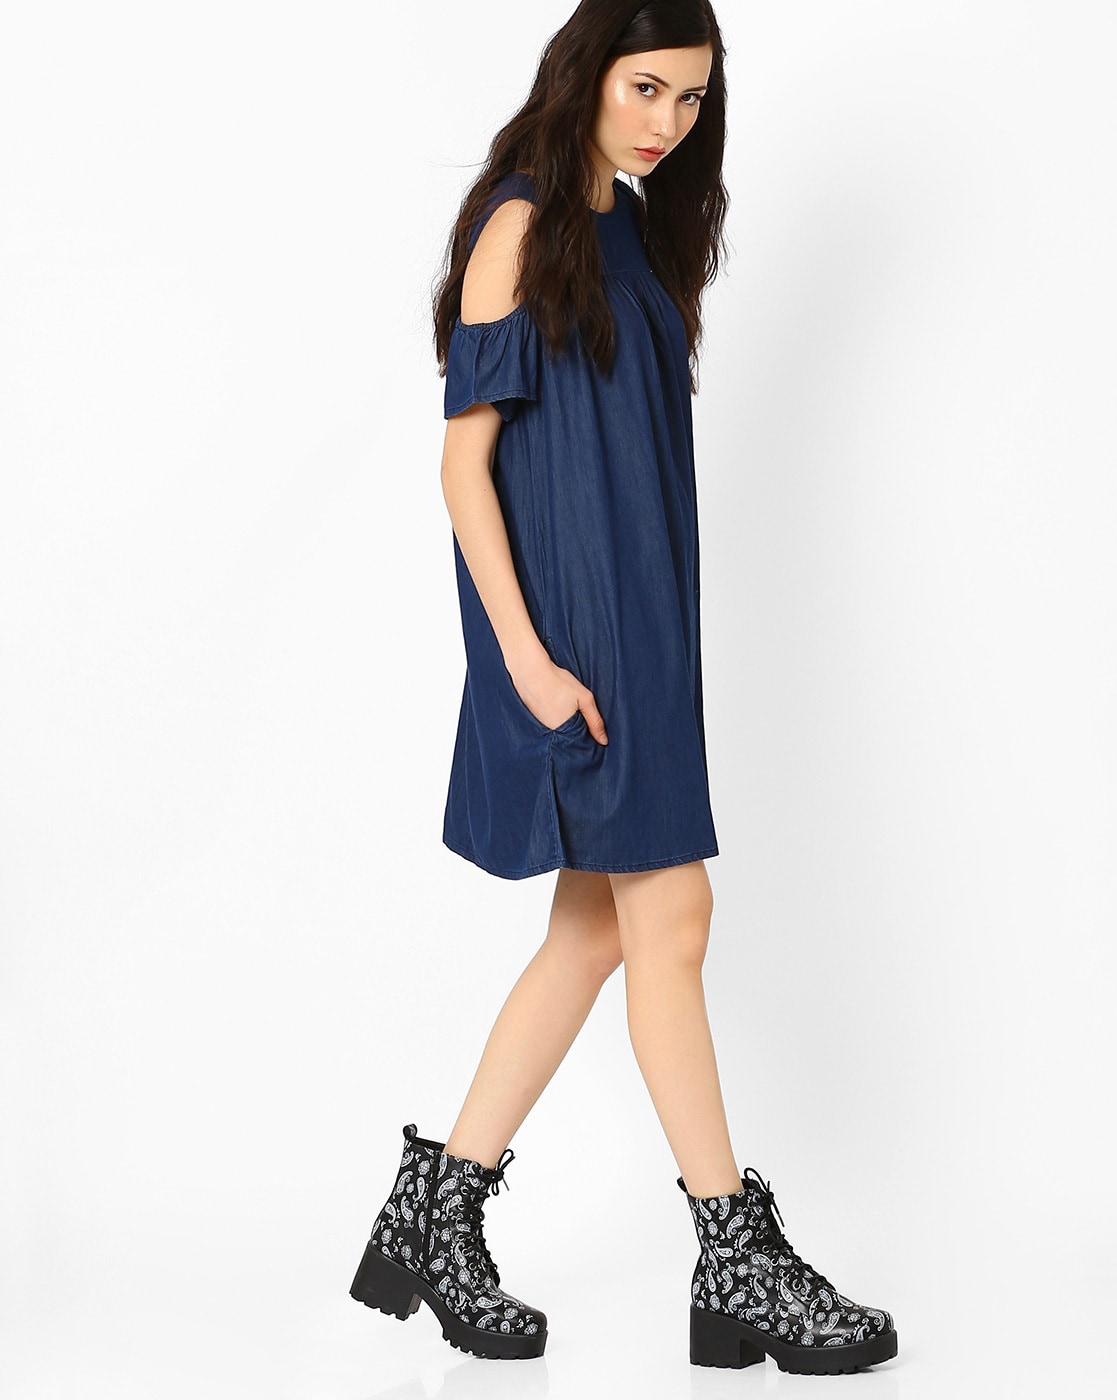 Rachel Cold Shoulder Denim Dress in Blue - ShopperBoard